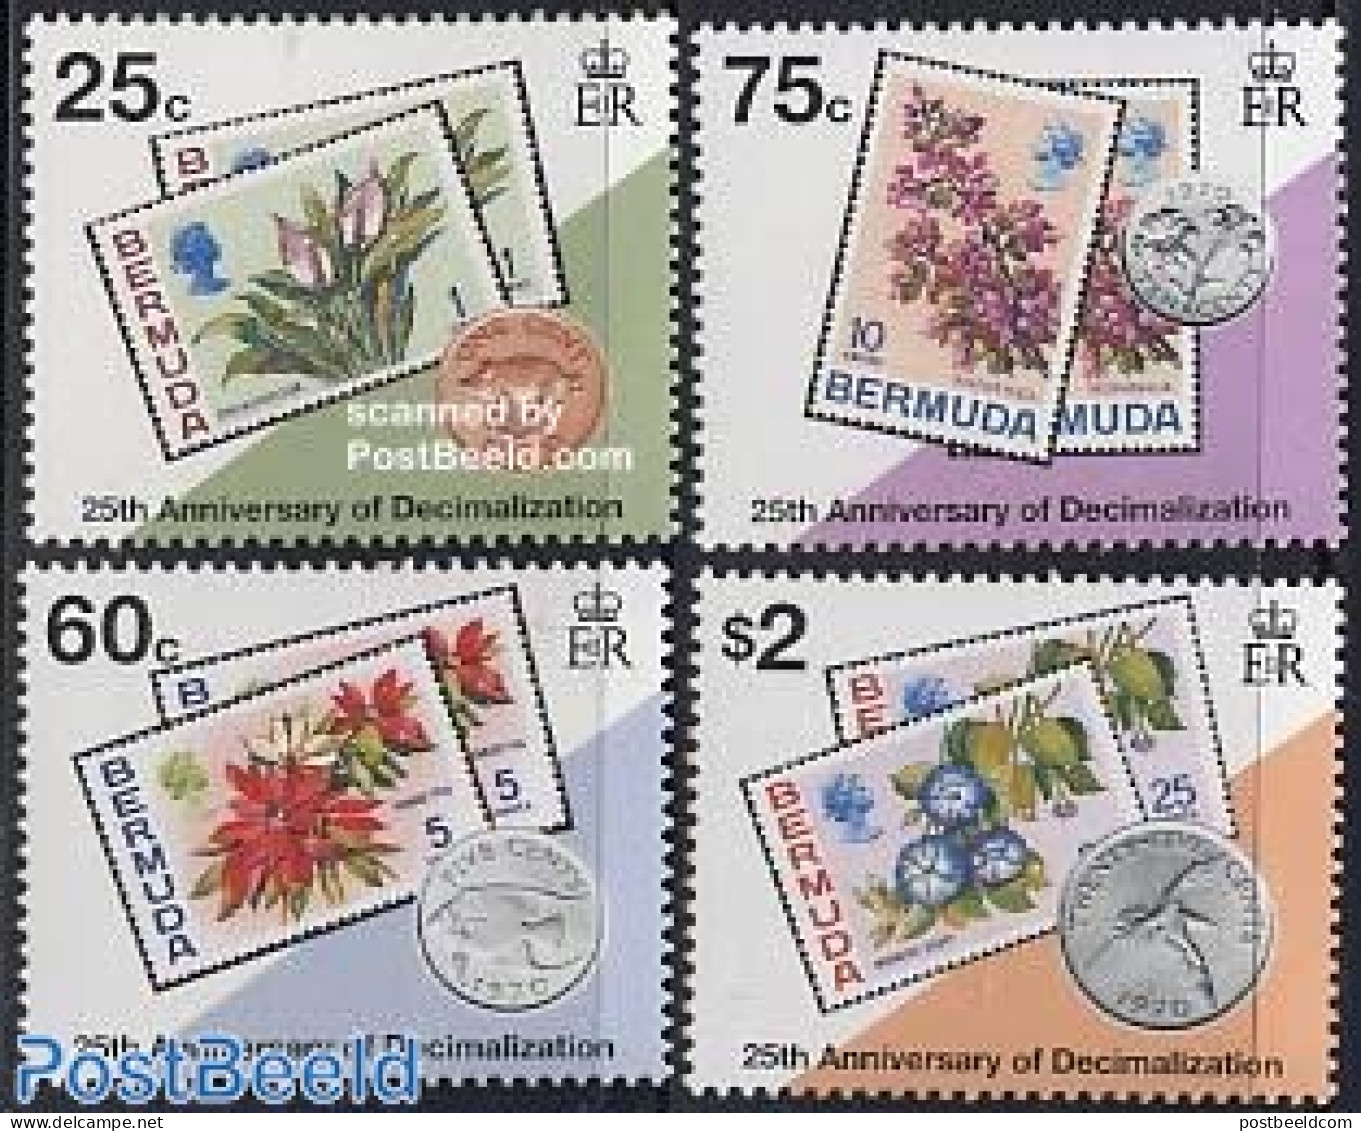 Bermuda 1995 Decimal System 4v, Mint NH, Nature - Various - Flowers & Plants - Stamps On Stamps - Money On Stamps - Briefmarken Auf Briefmarken